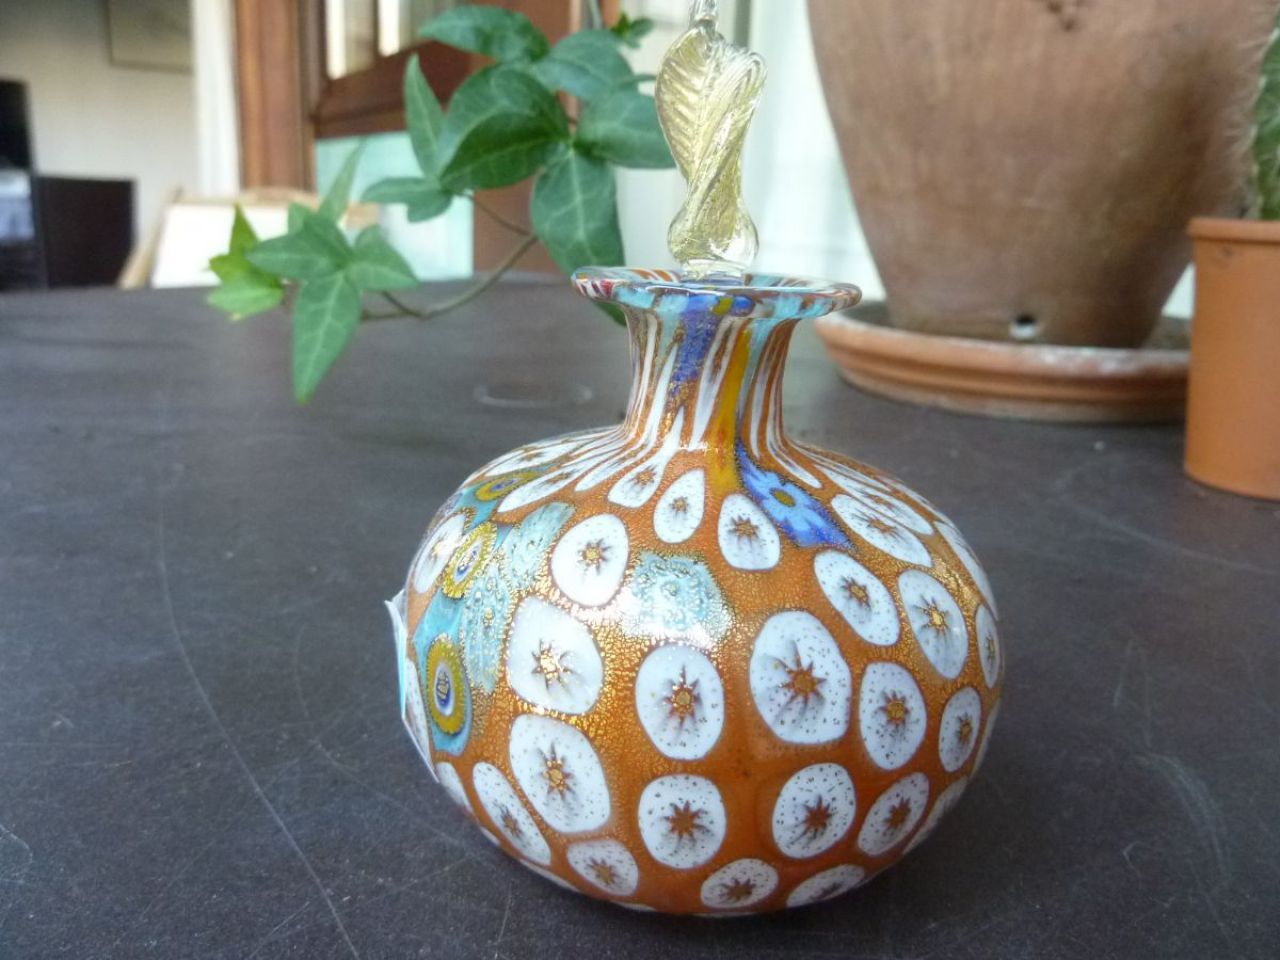 flacon à parfum en verre millefleur, travail traditionnel du verre à Murano, recouvert d'une fine feuille d'or